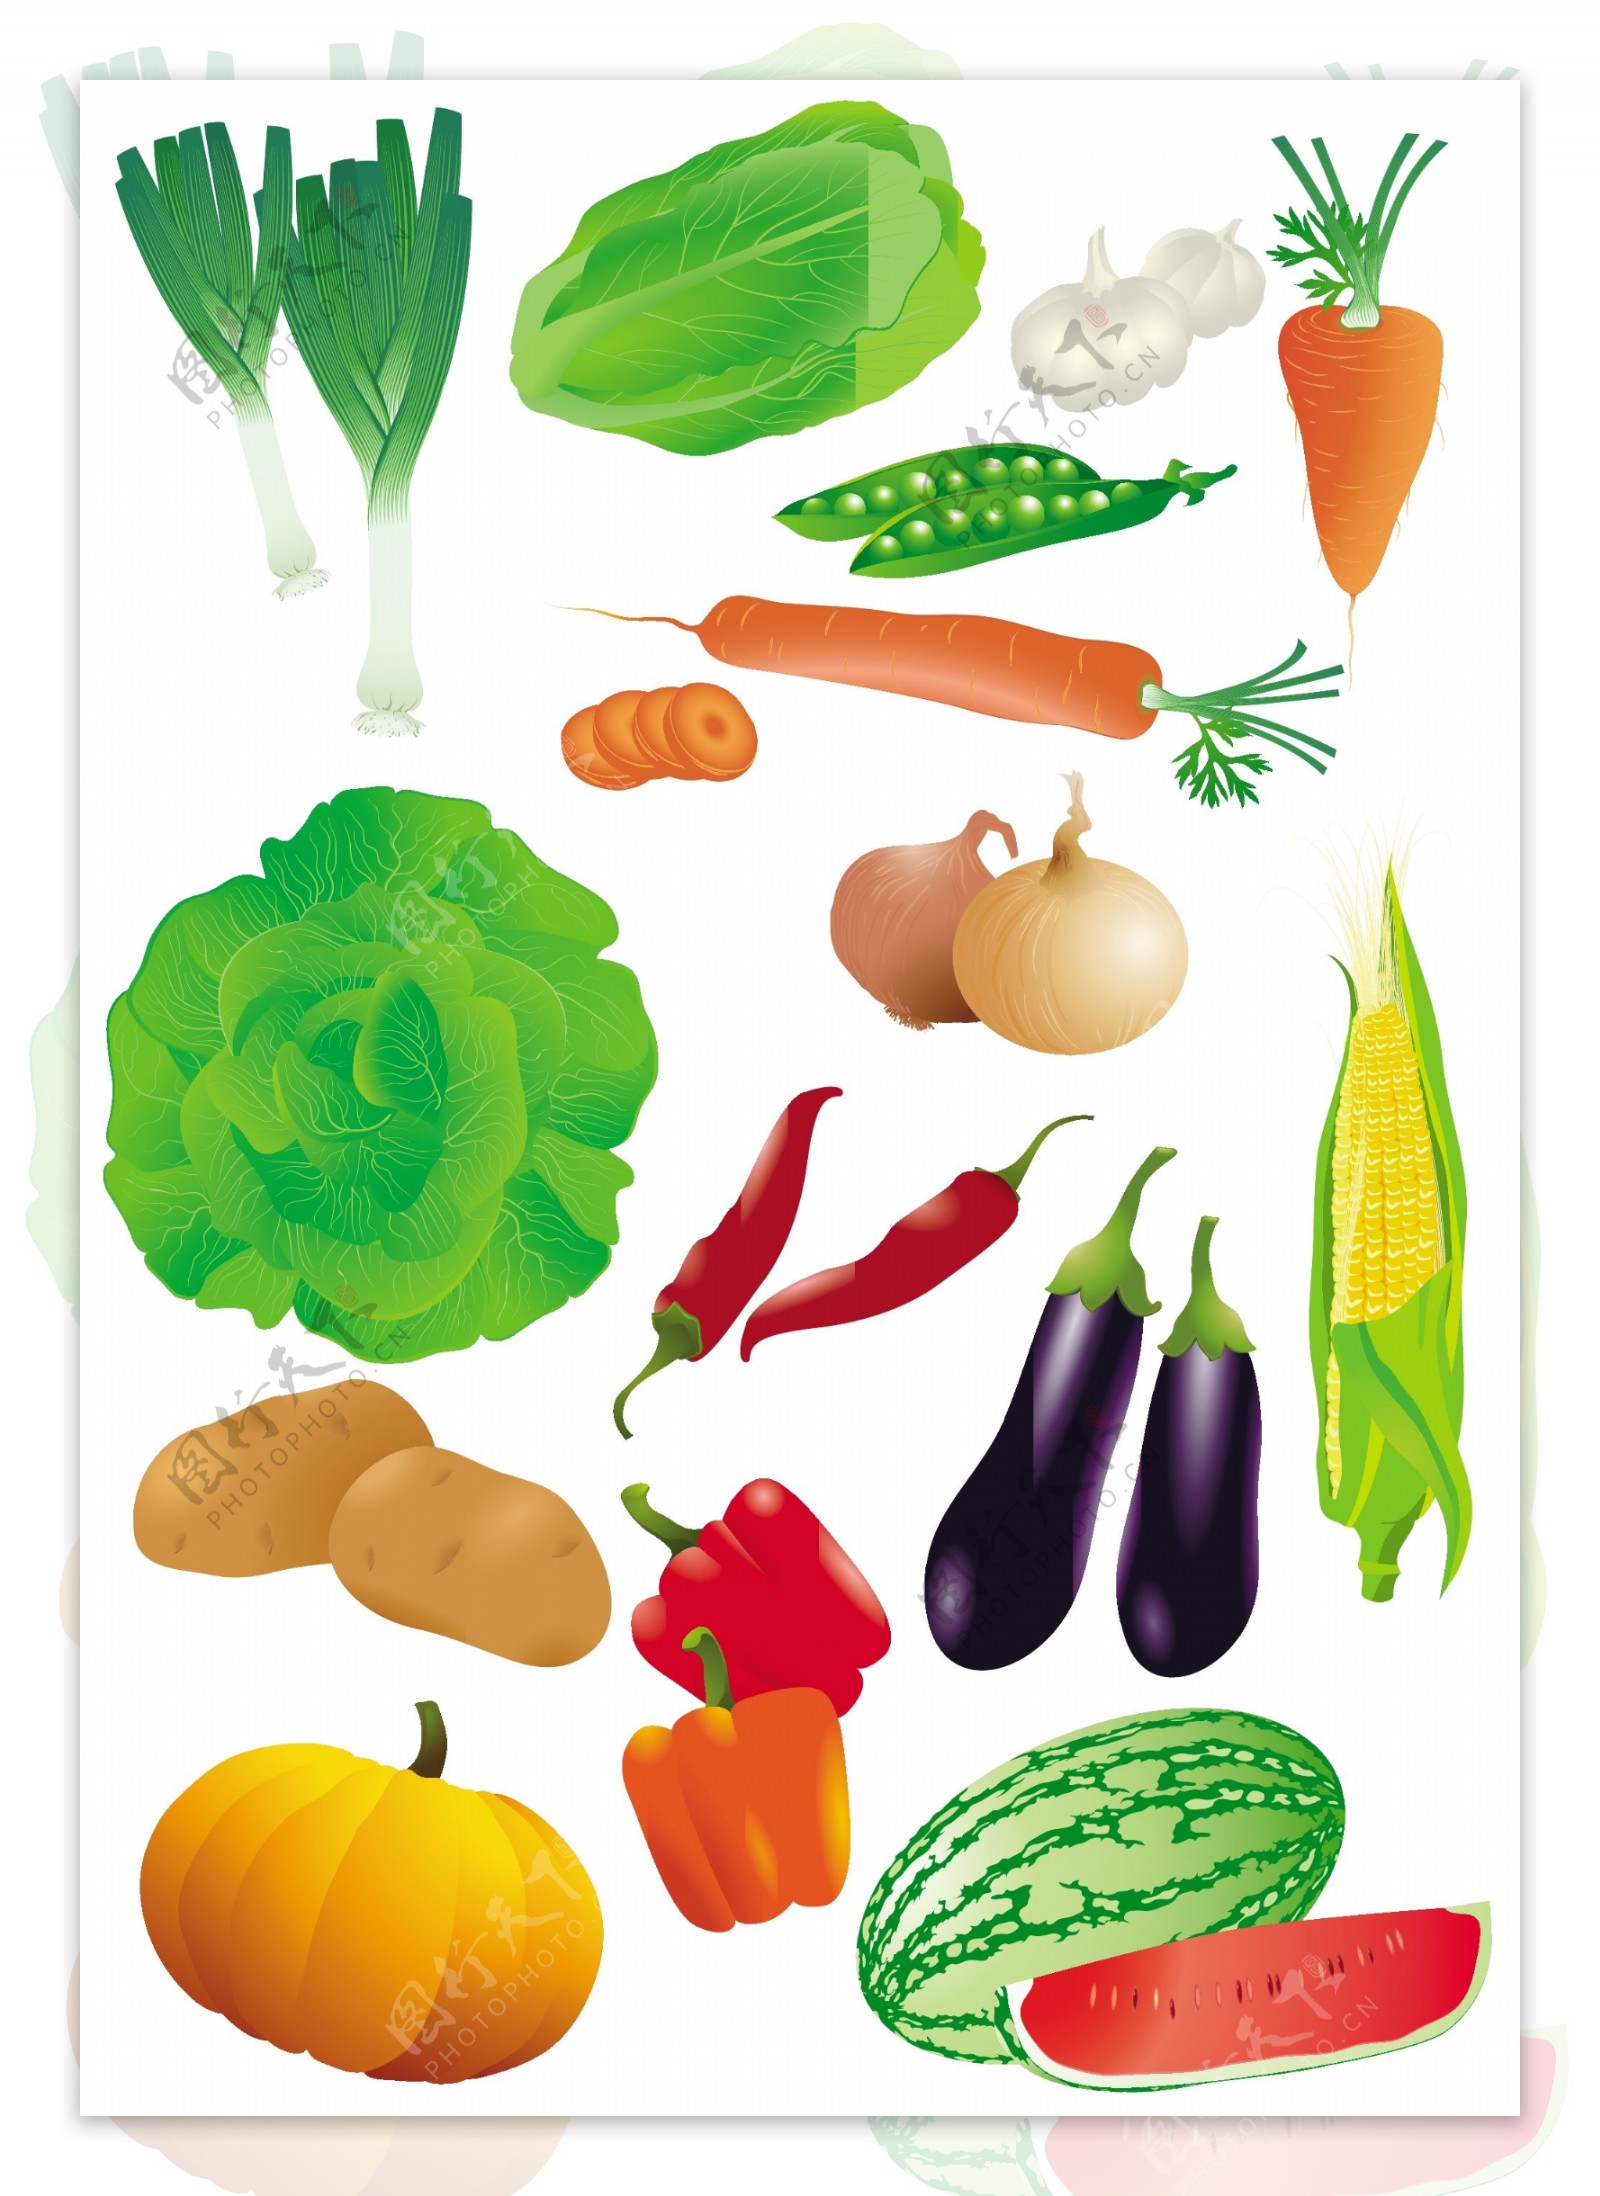 蔬菜水果矢量图图片